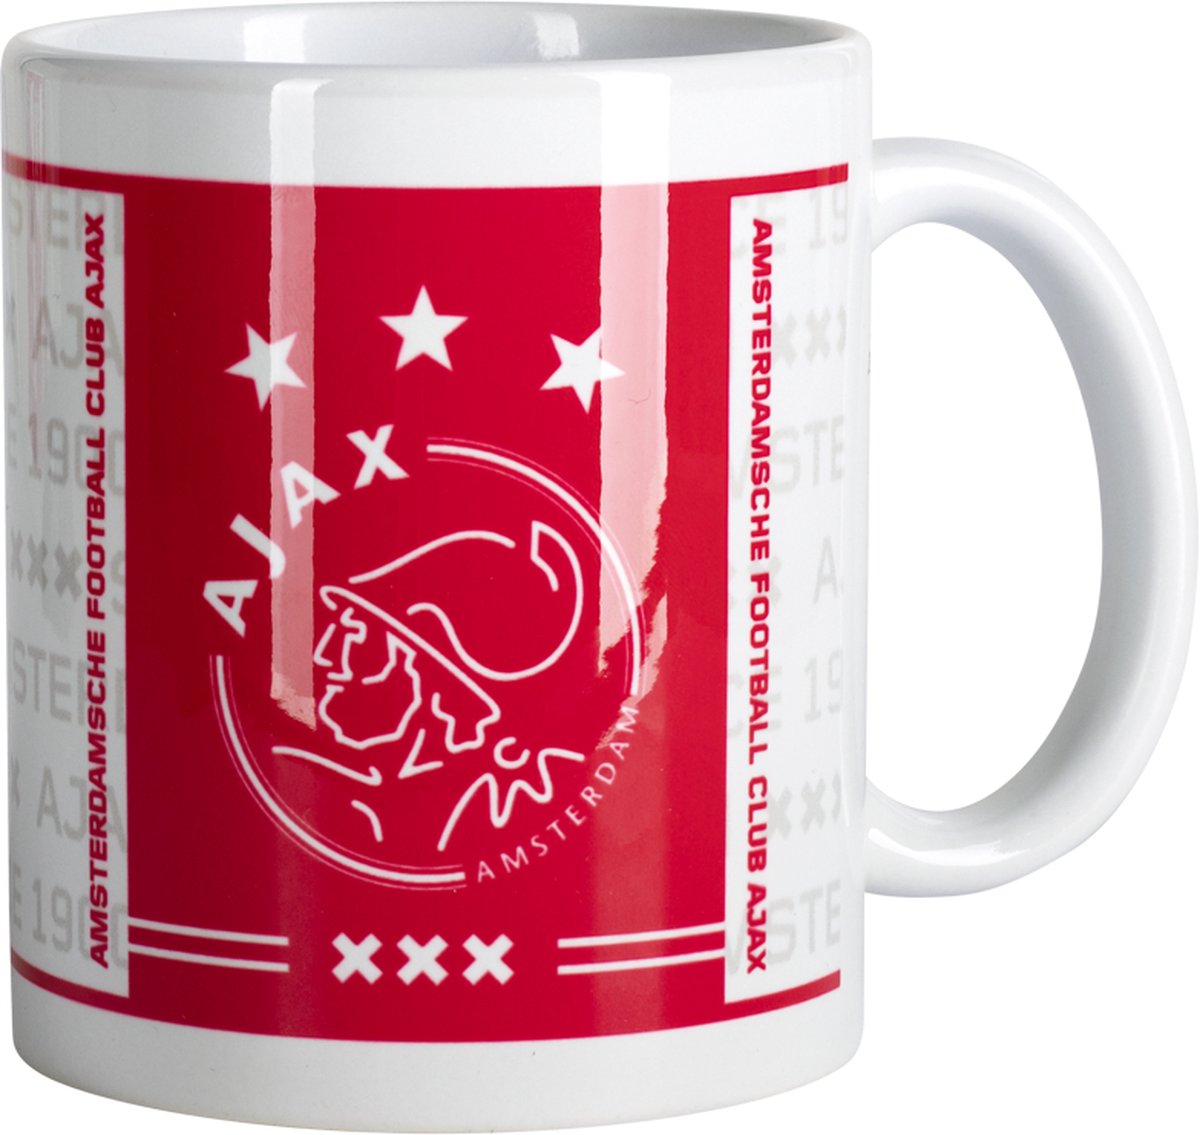 Ajax-mok wit rood wit logo xxx - Ajax